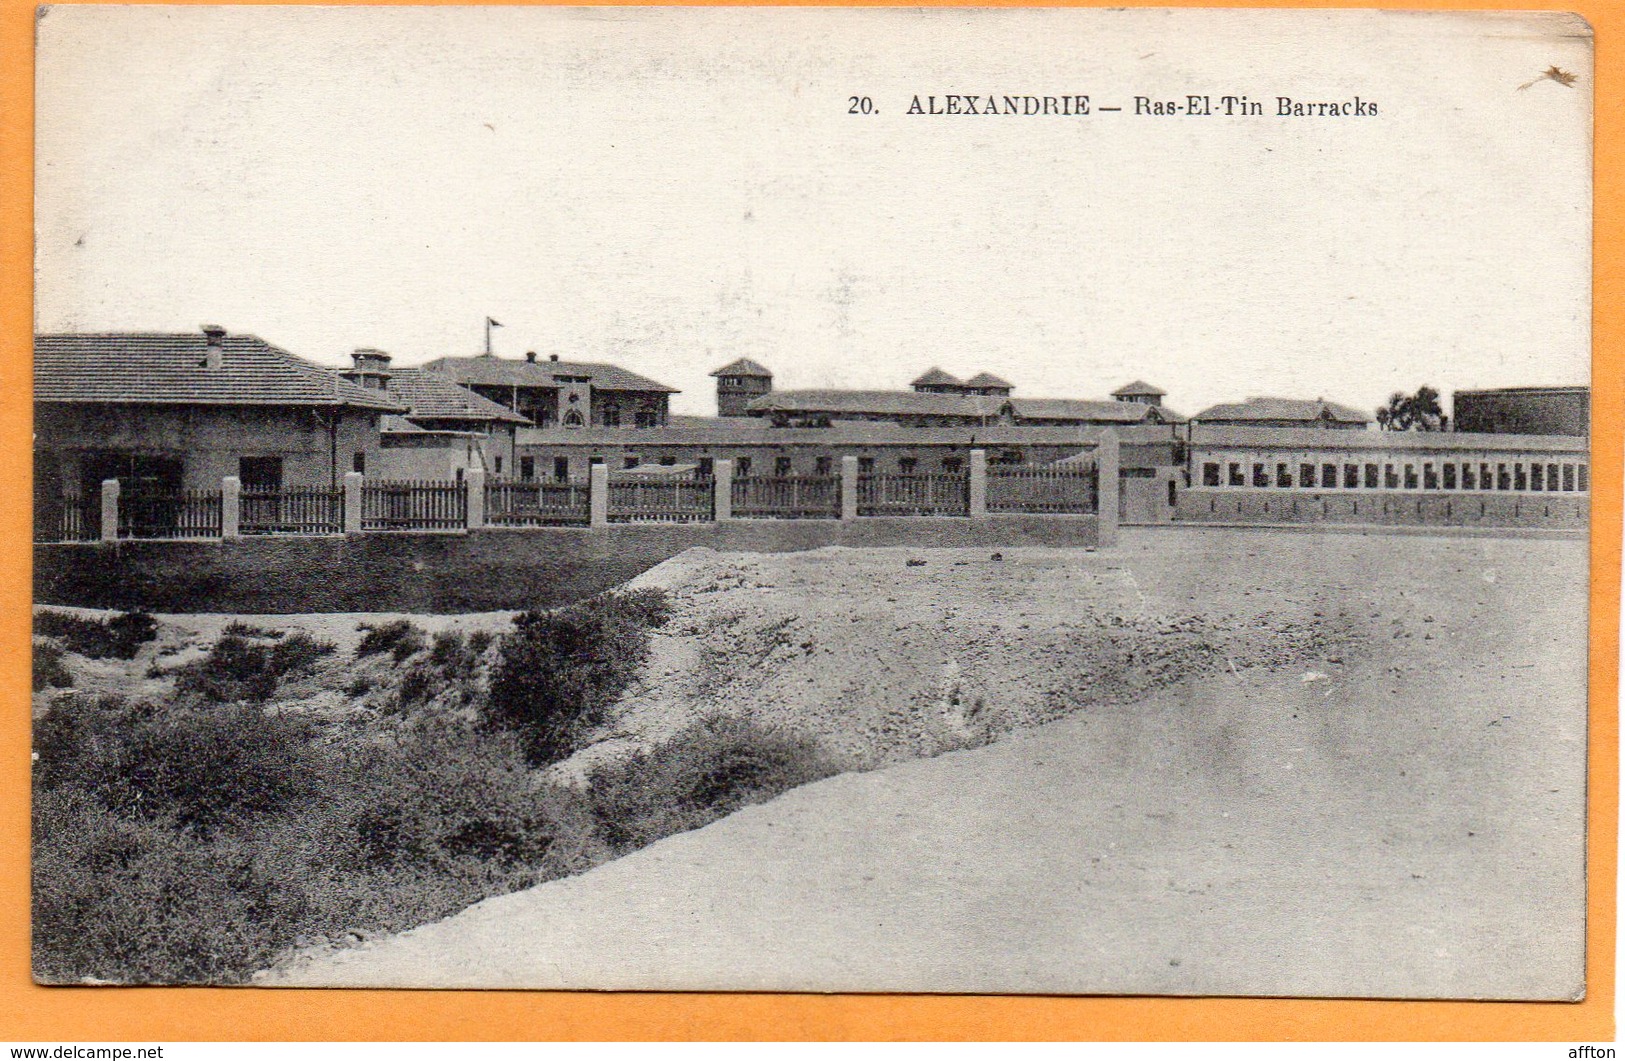 Alexandria Egypt 1910 Postcard - Alexandrie